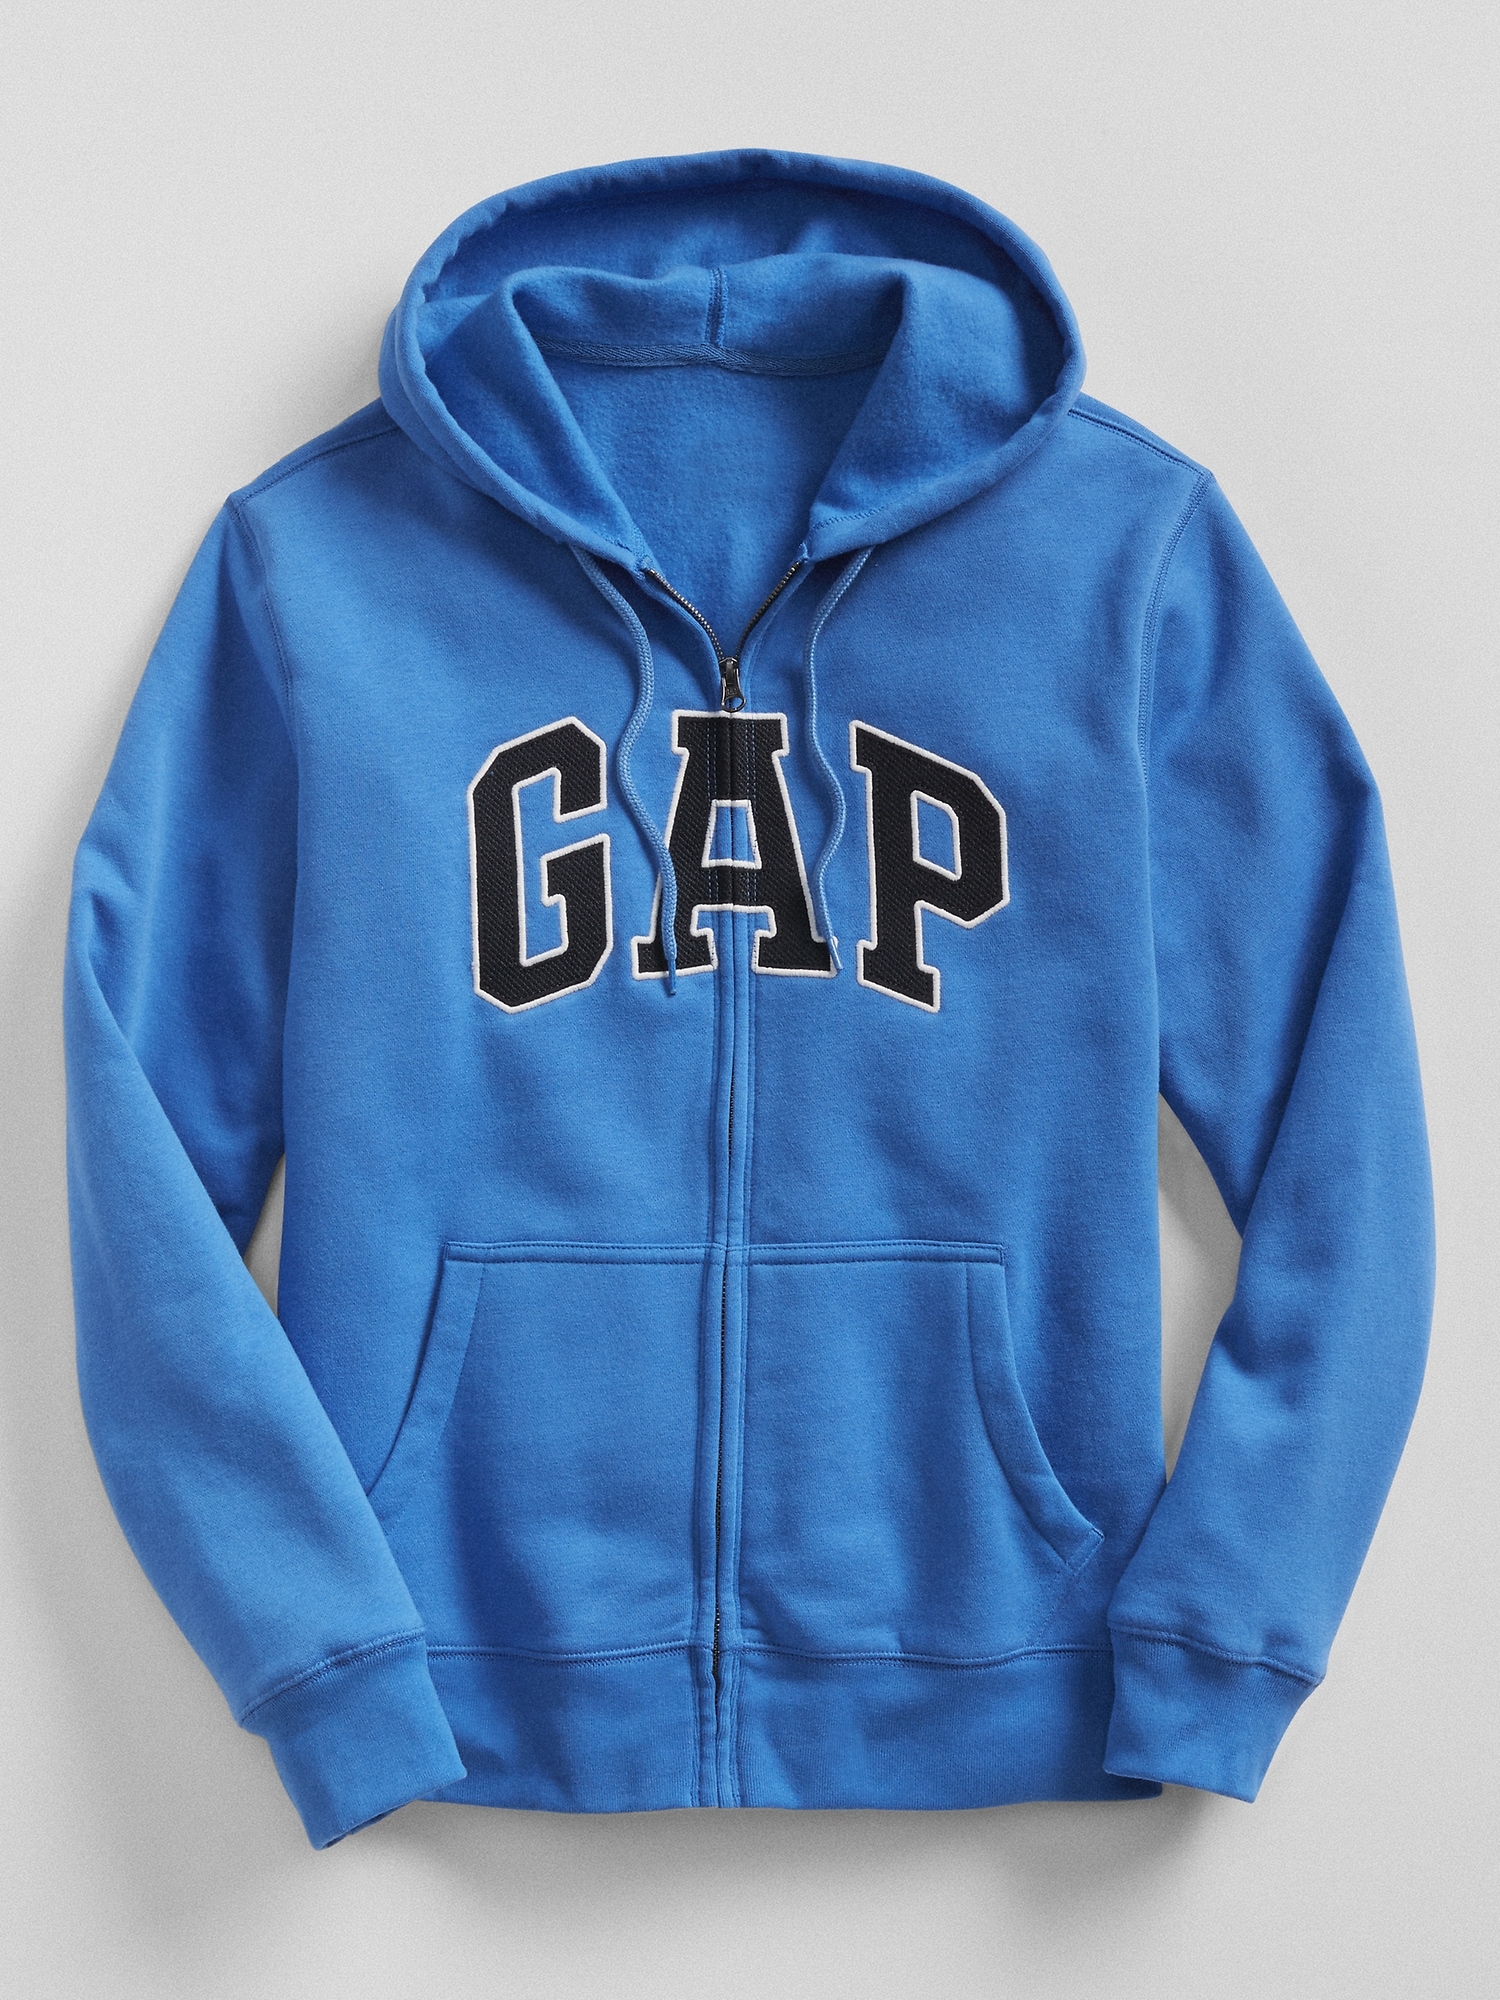 blue gap jacket